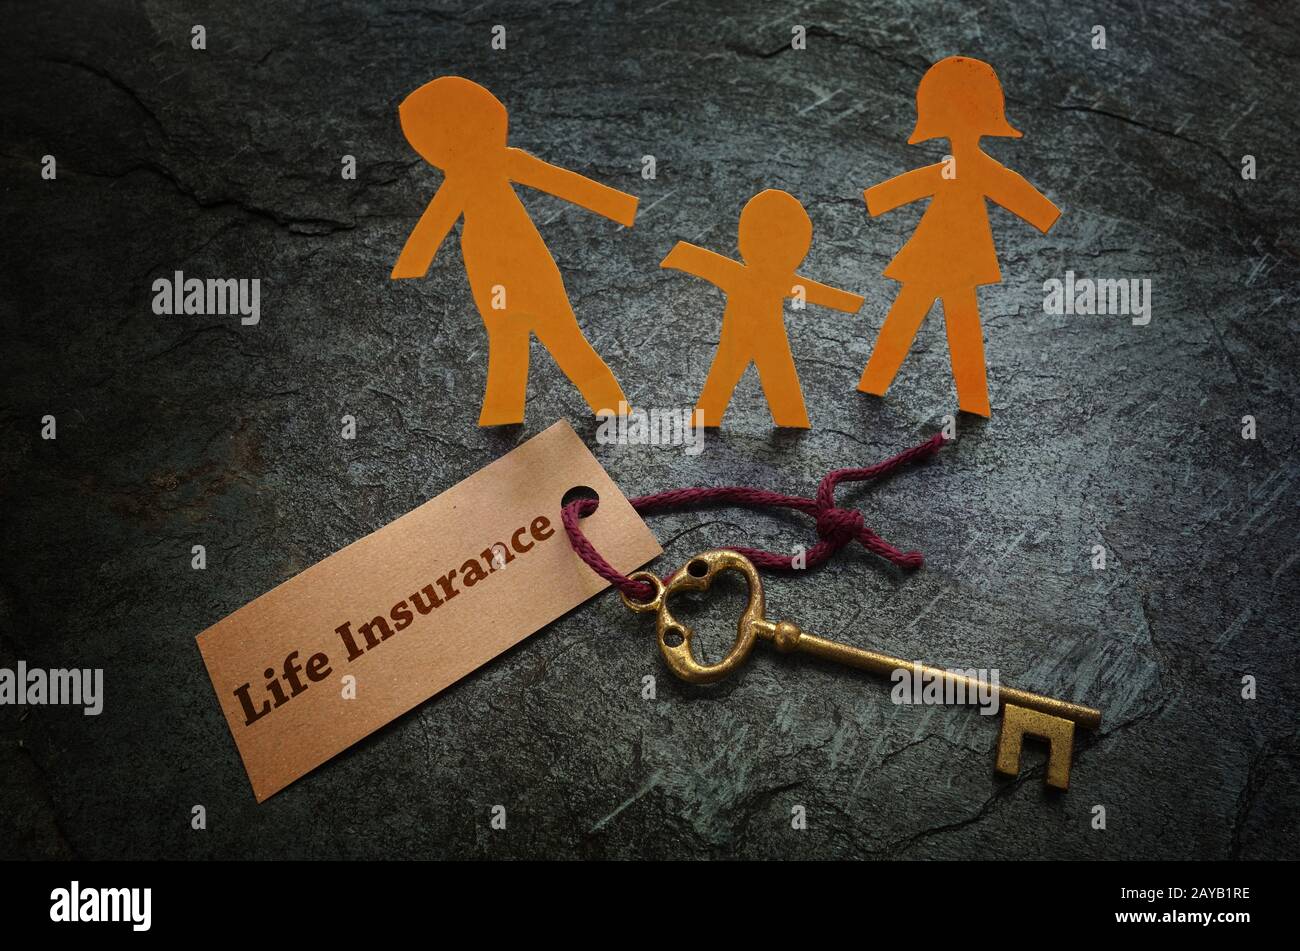 Life Insurance family key Stock Photo